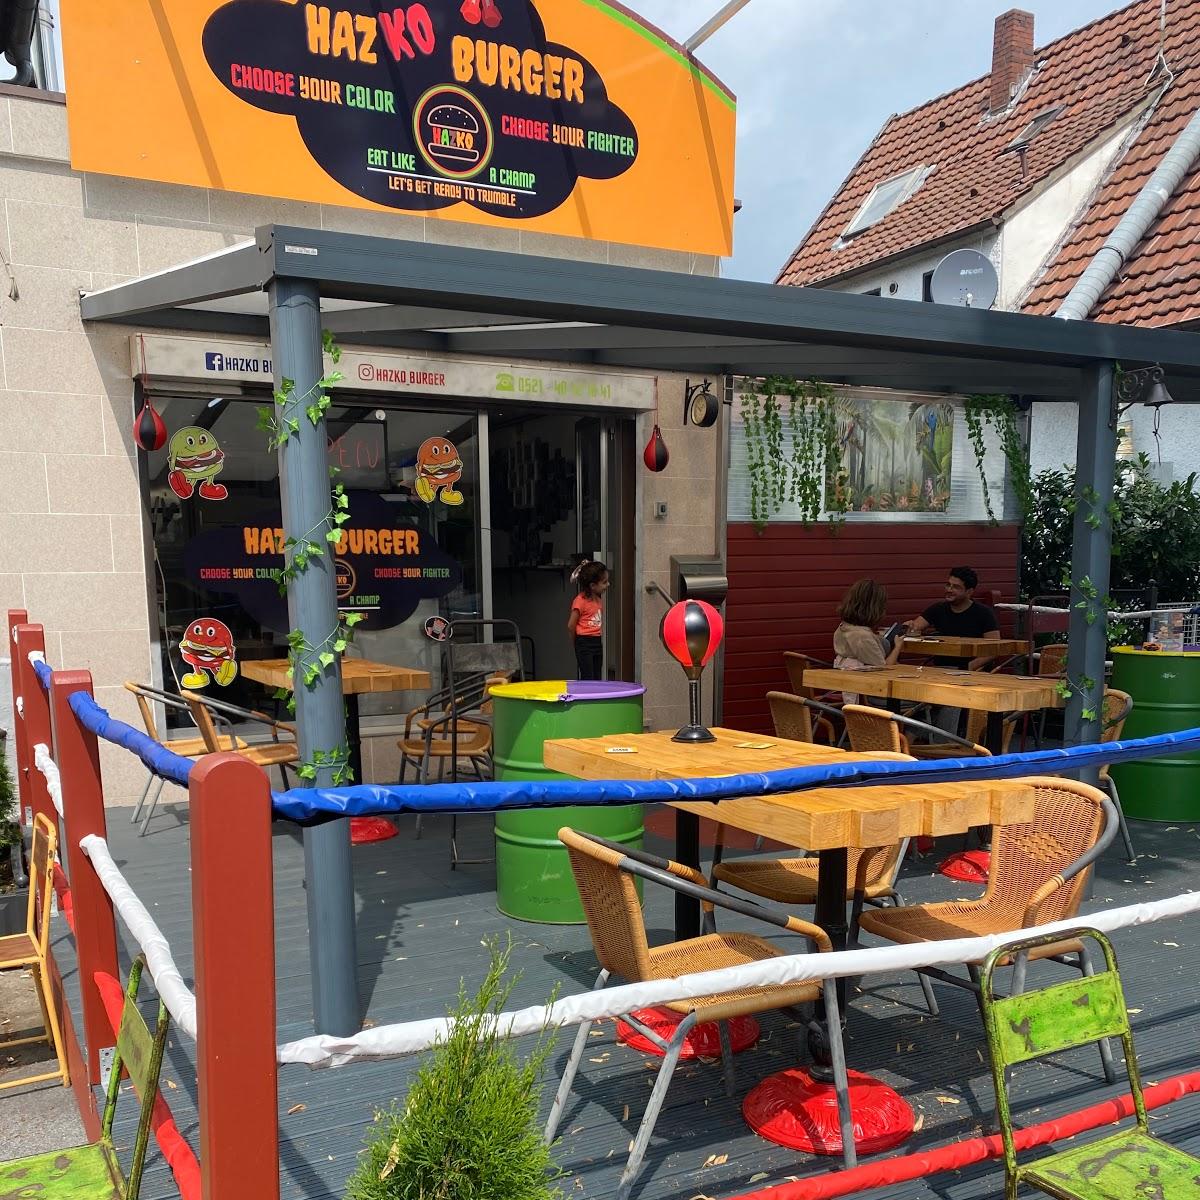 Restaurant "Hazko Burger" in Bielefeld